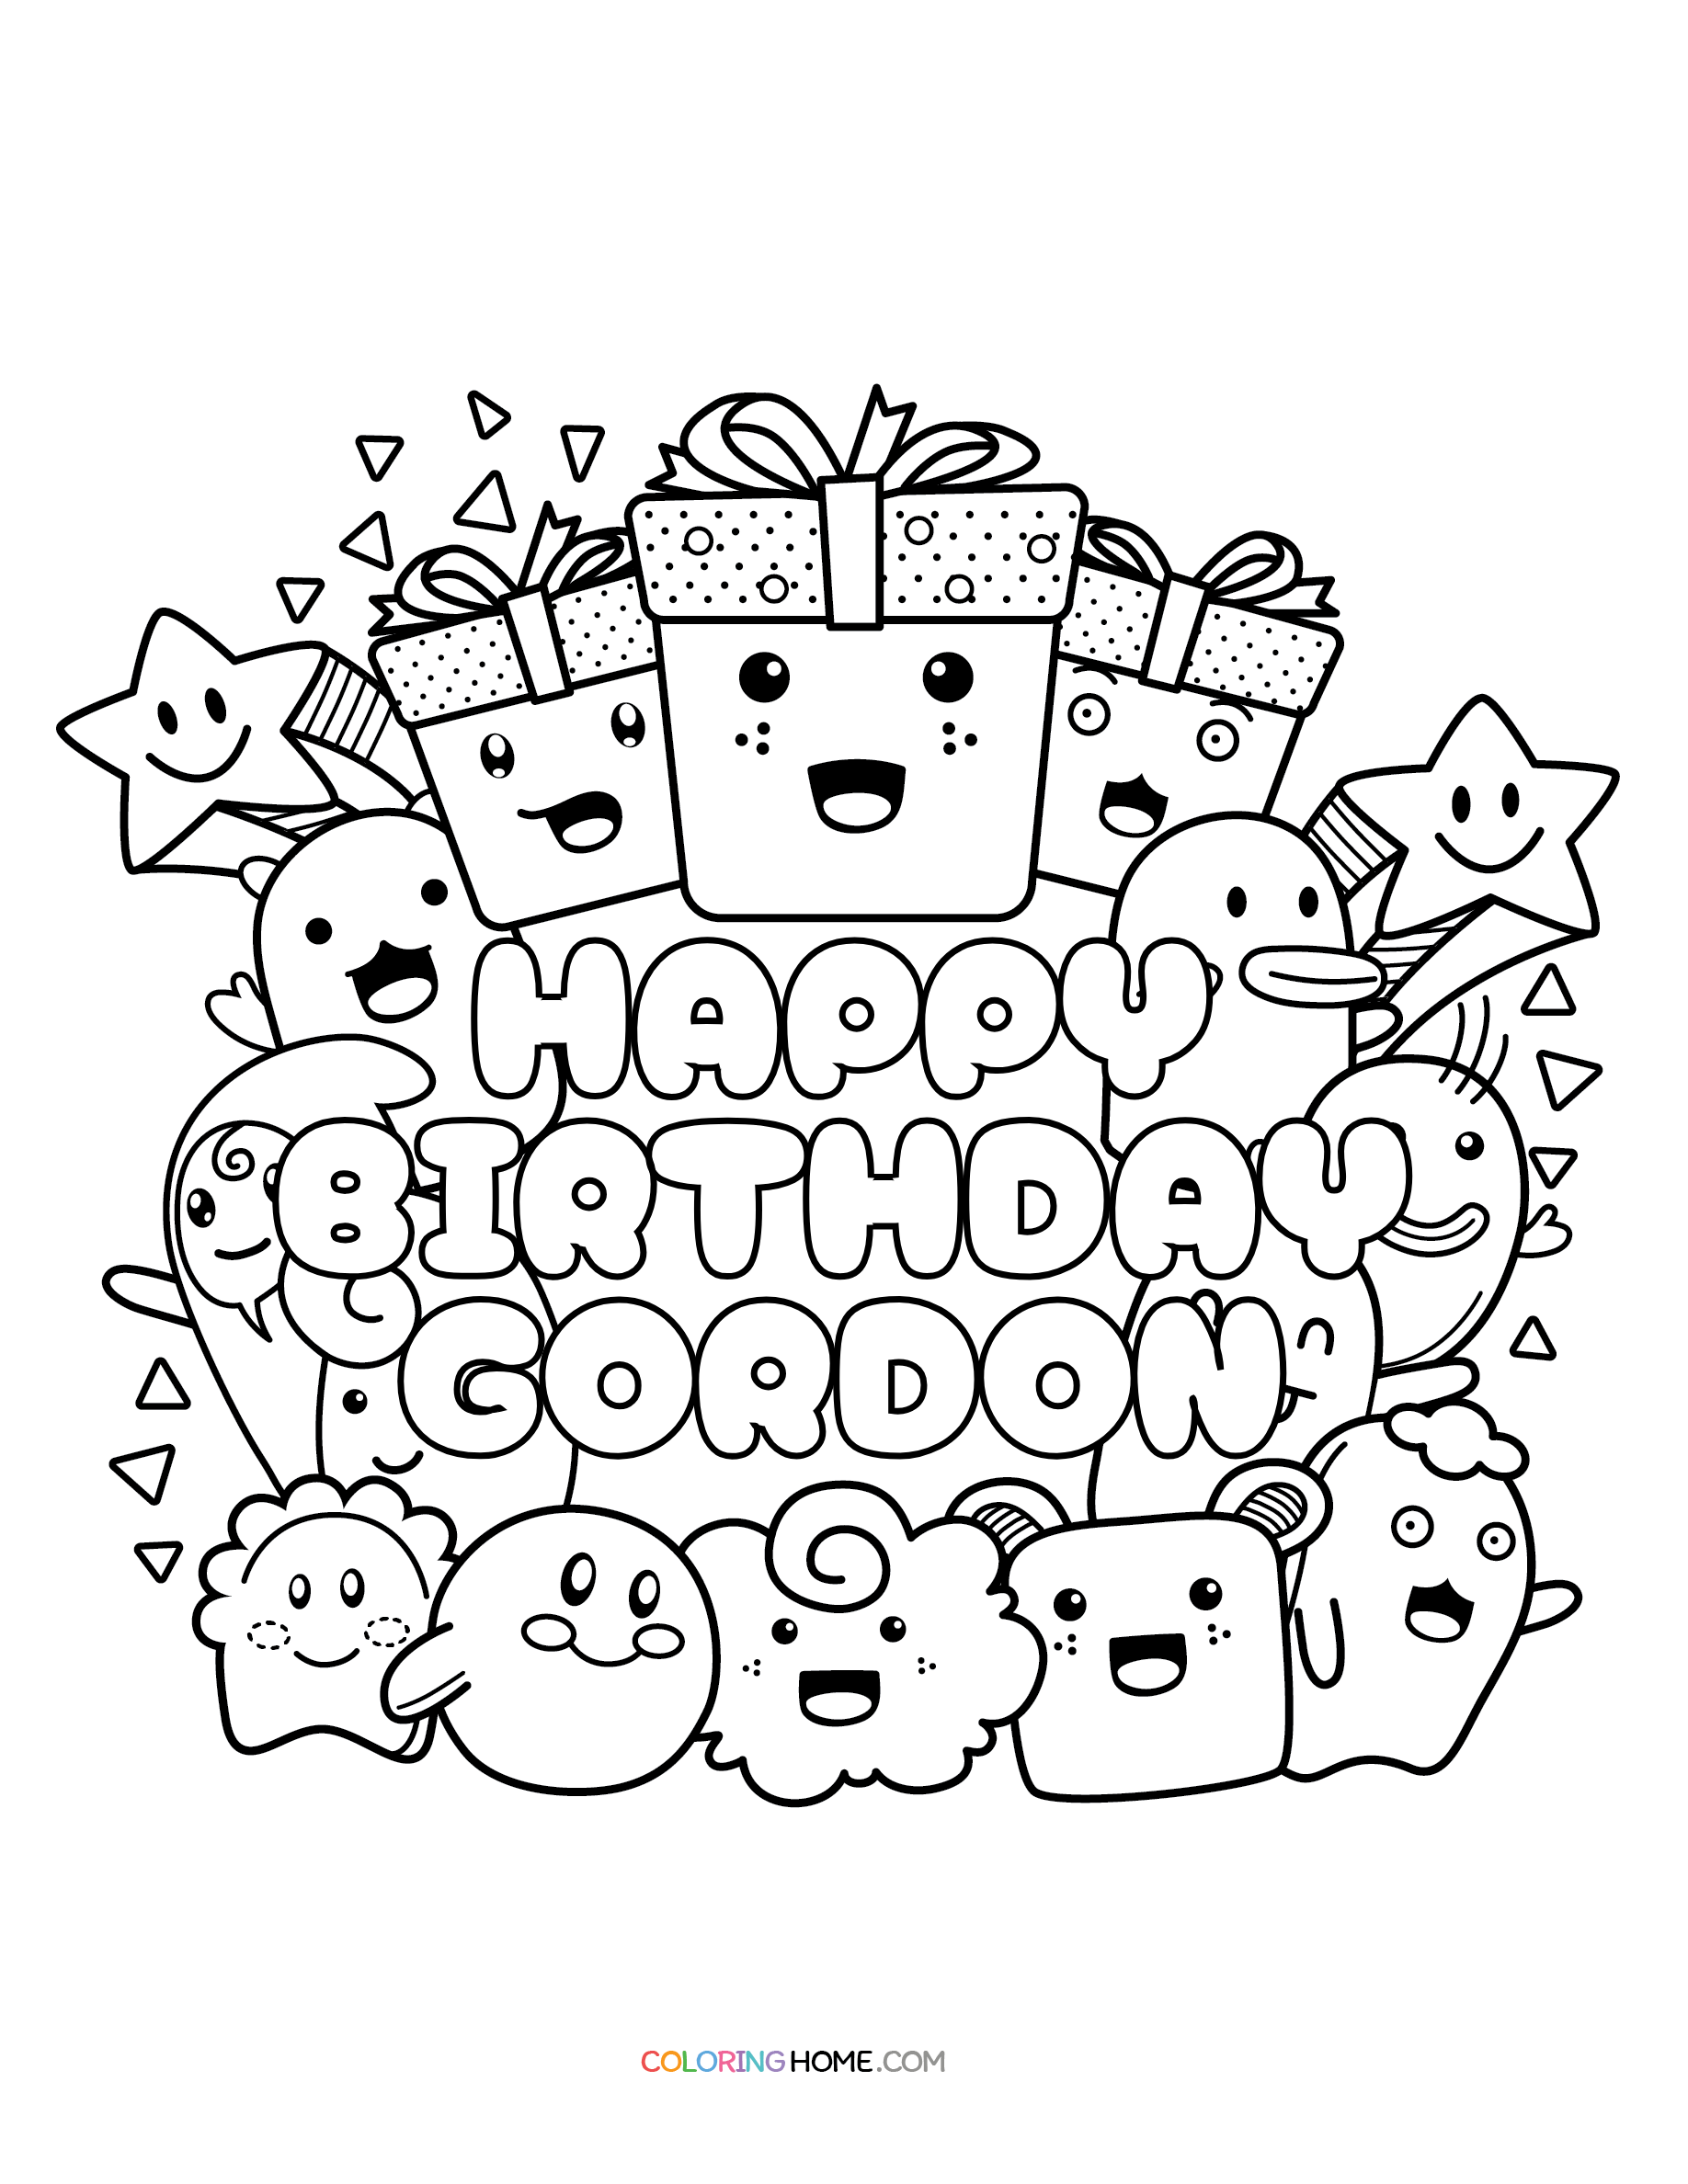 Happy Birthday Gordon coloring page